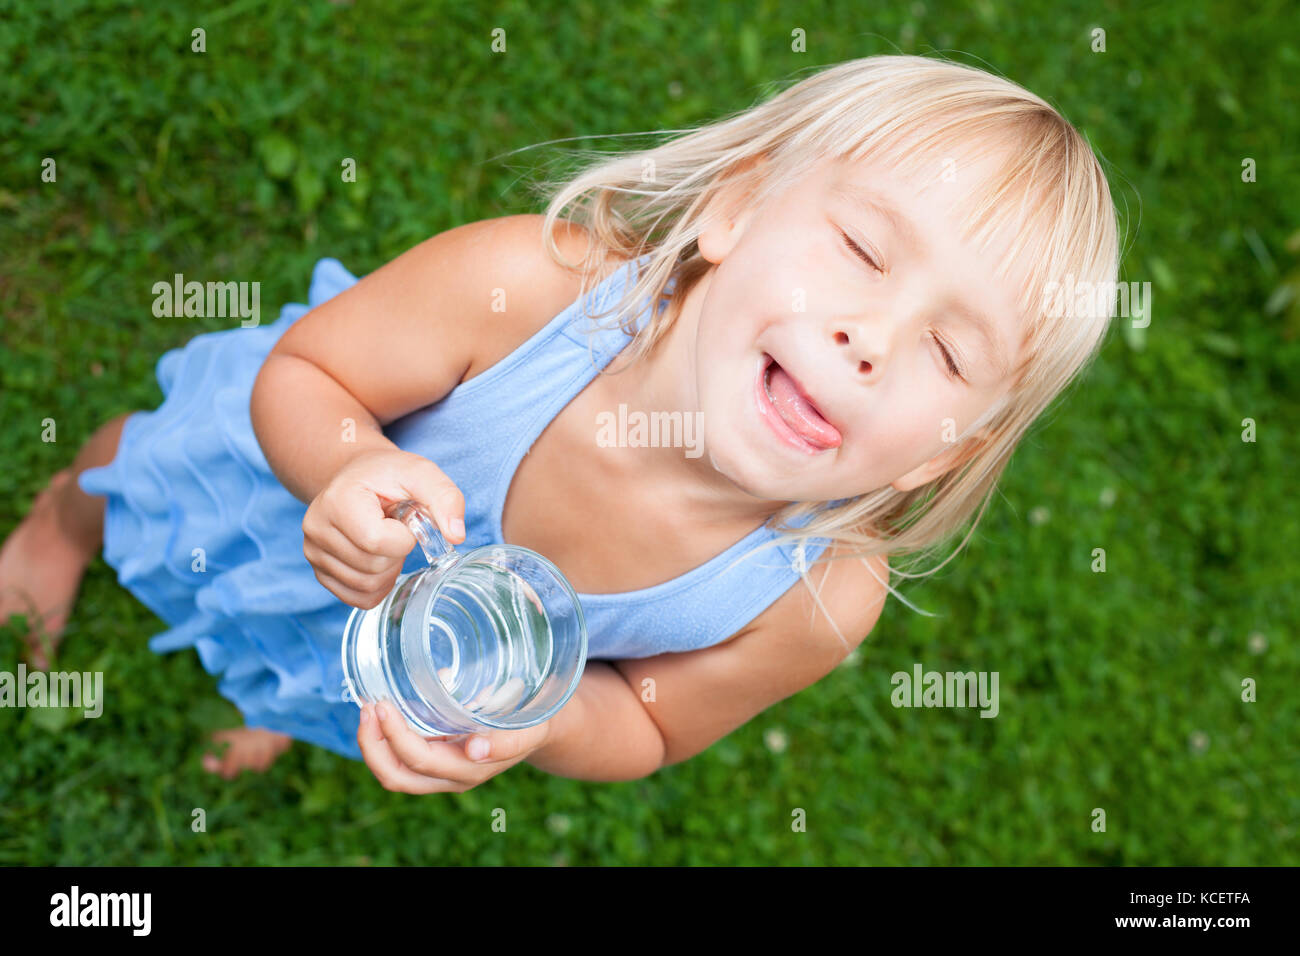 High angle view of petite fille blonde wearing blue dress holding verre de l'eau léchant ses lèvres avec ses yeux fermés dans un jardin d'été Banque D'Images